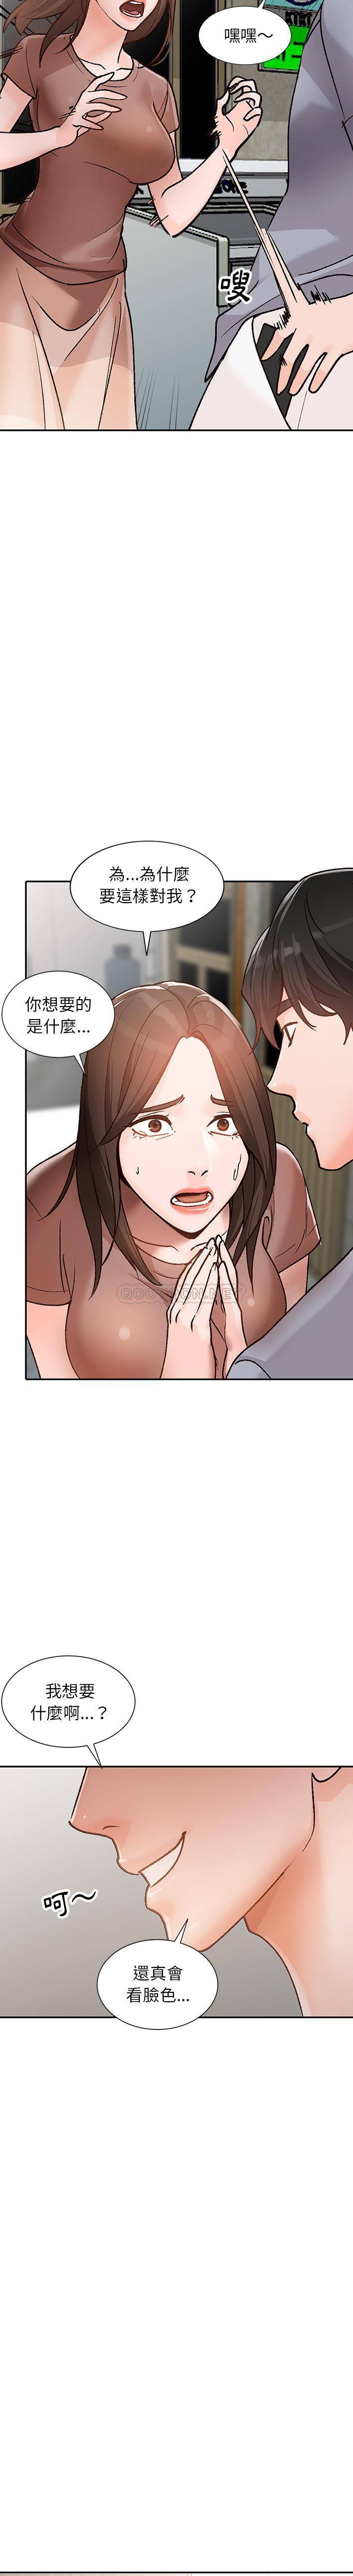 韩国污漫画 她們的小秘密(小鎮上的女人們) 第2话 9